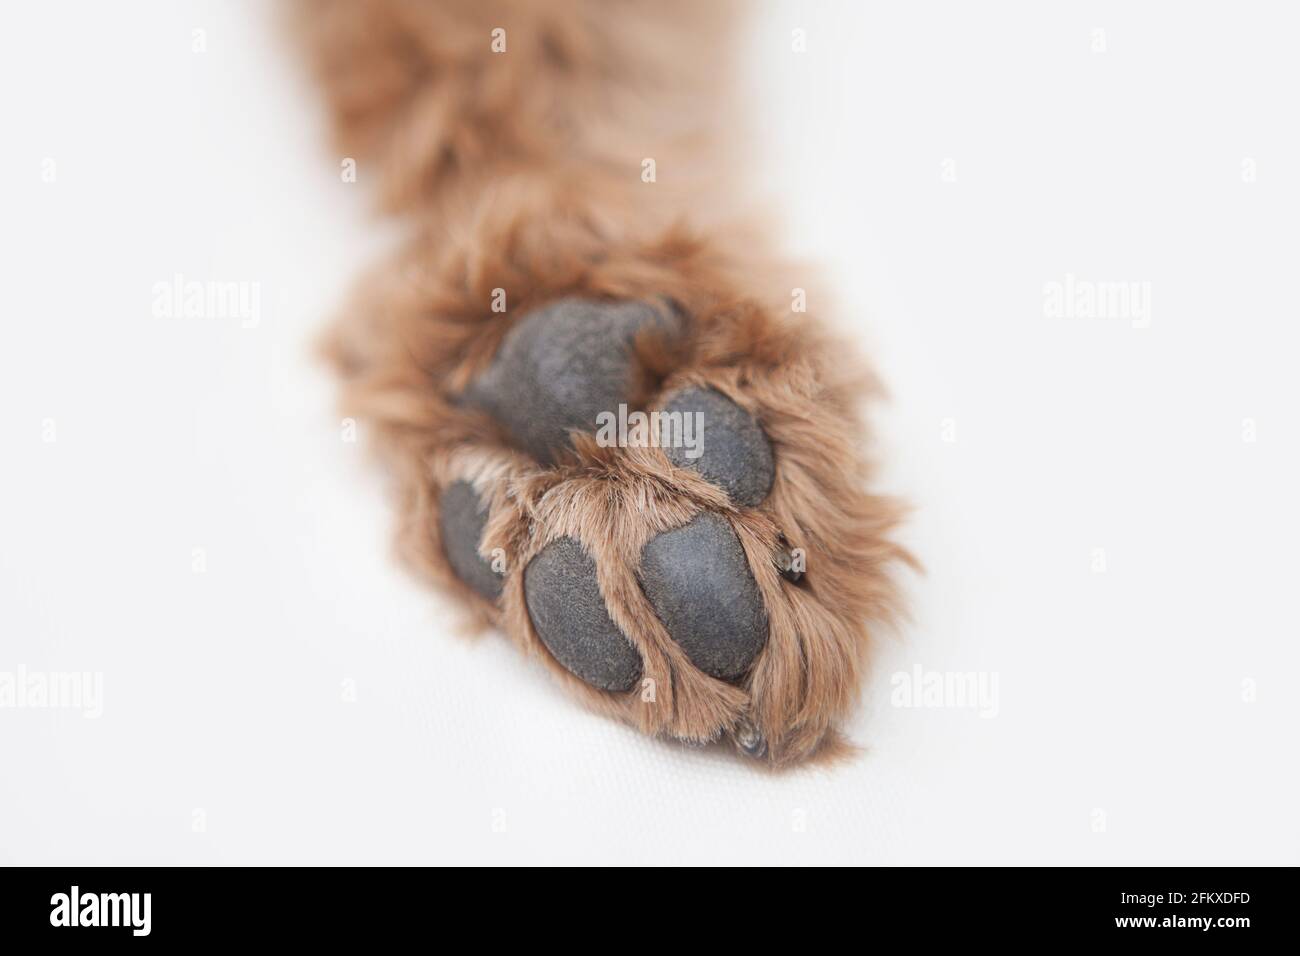 La pata trasera de un cacapoo rojo-marrón (cockapoo / cocker spaniel + poodle cruz), paw pads mirando hacia arriba Foto de stock